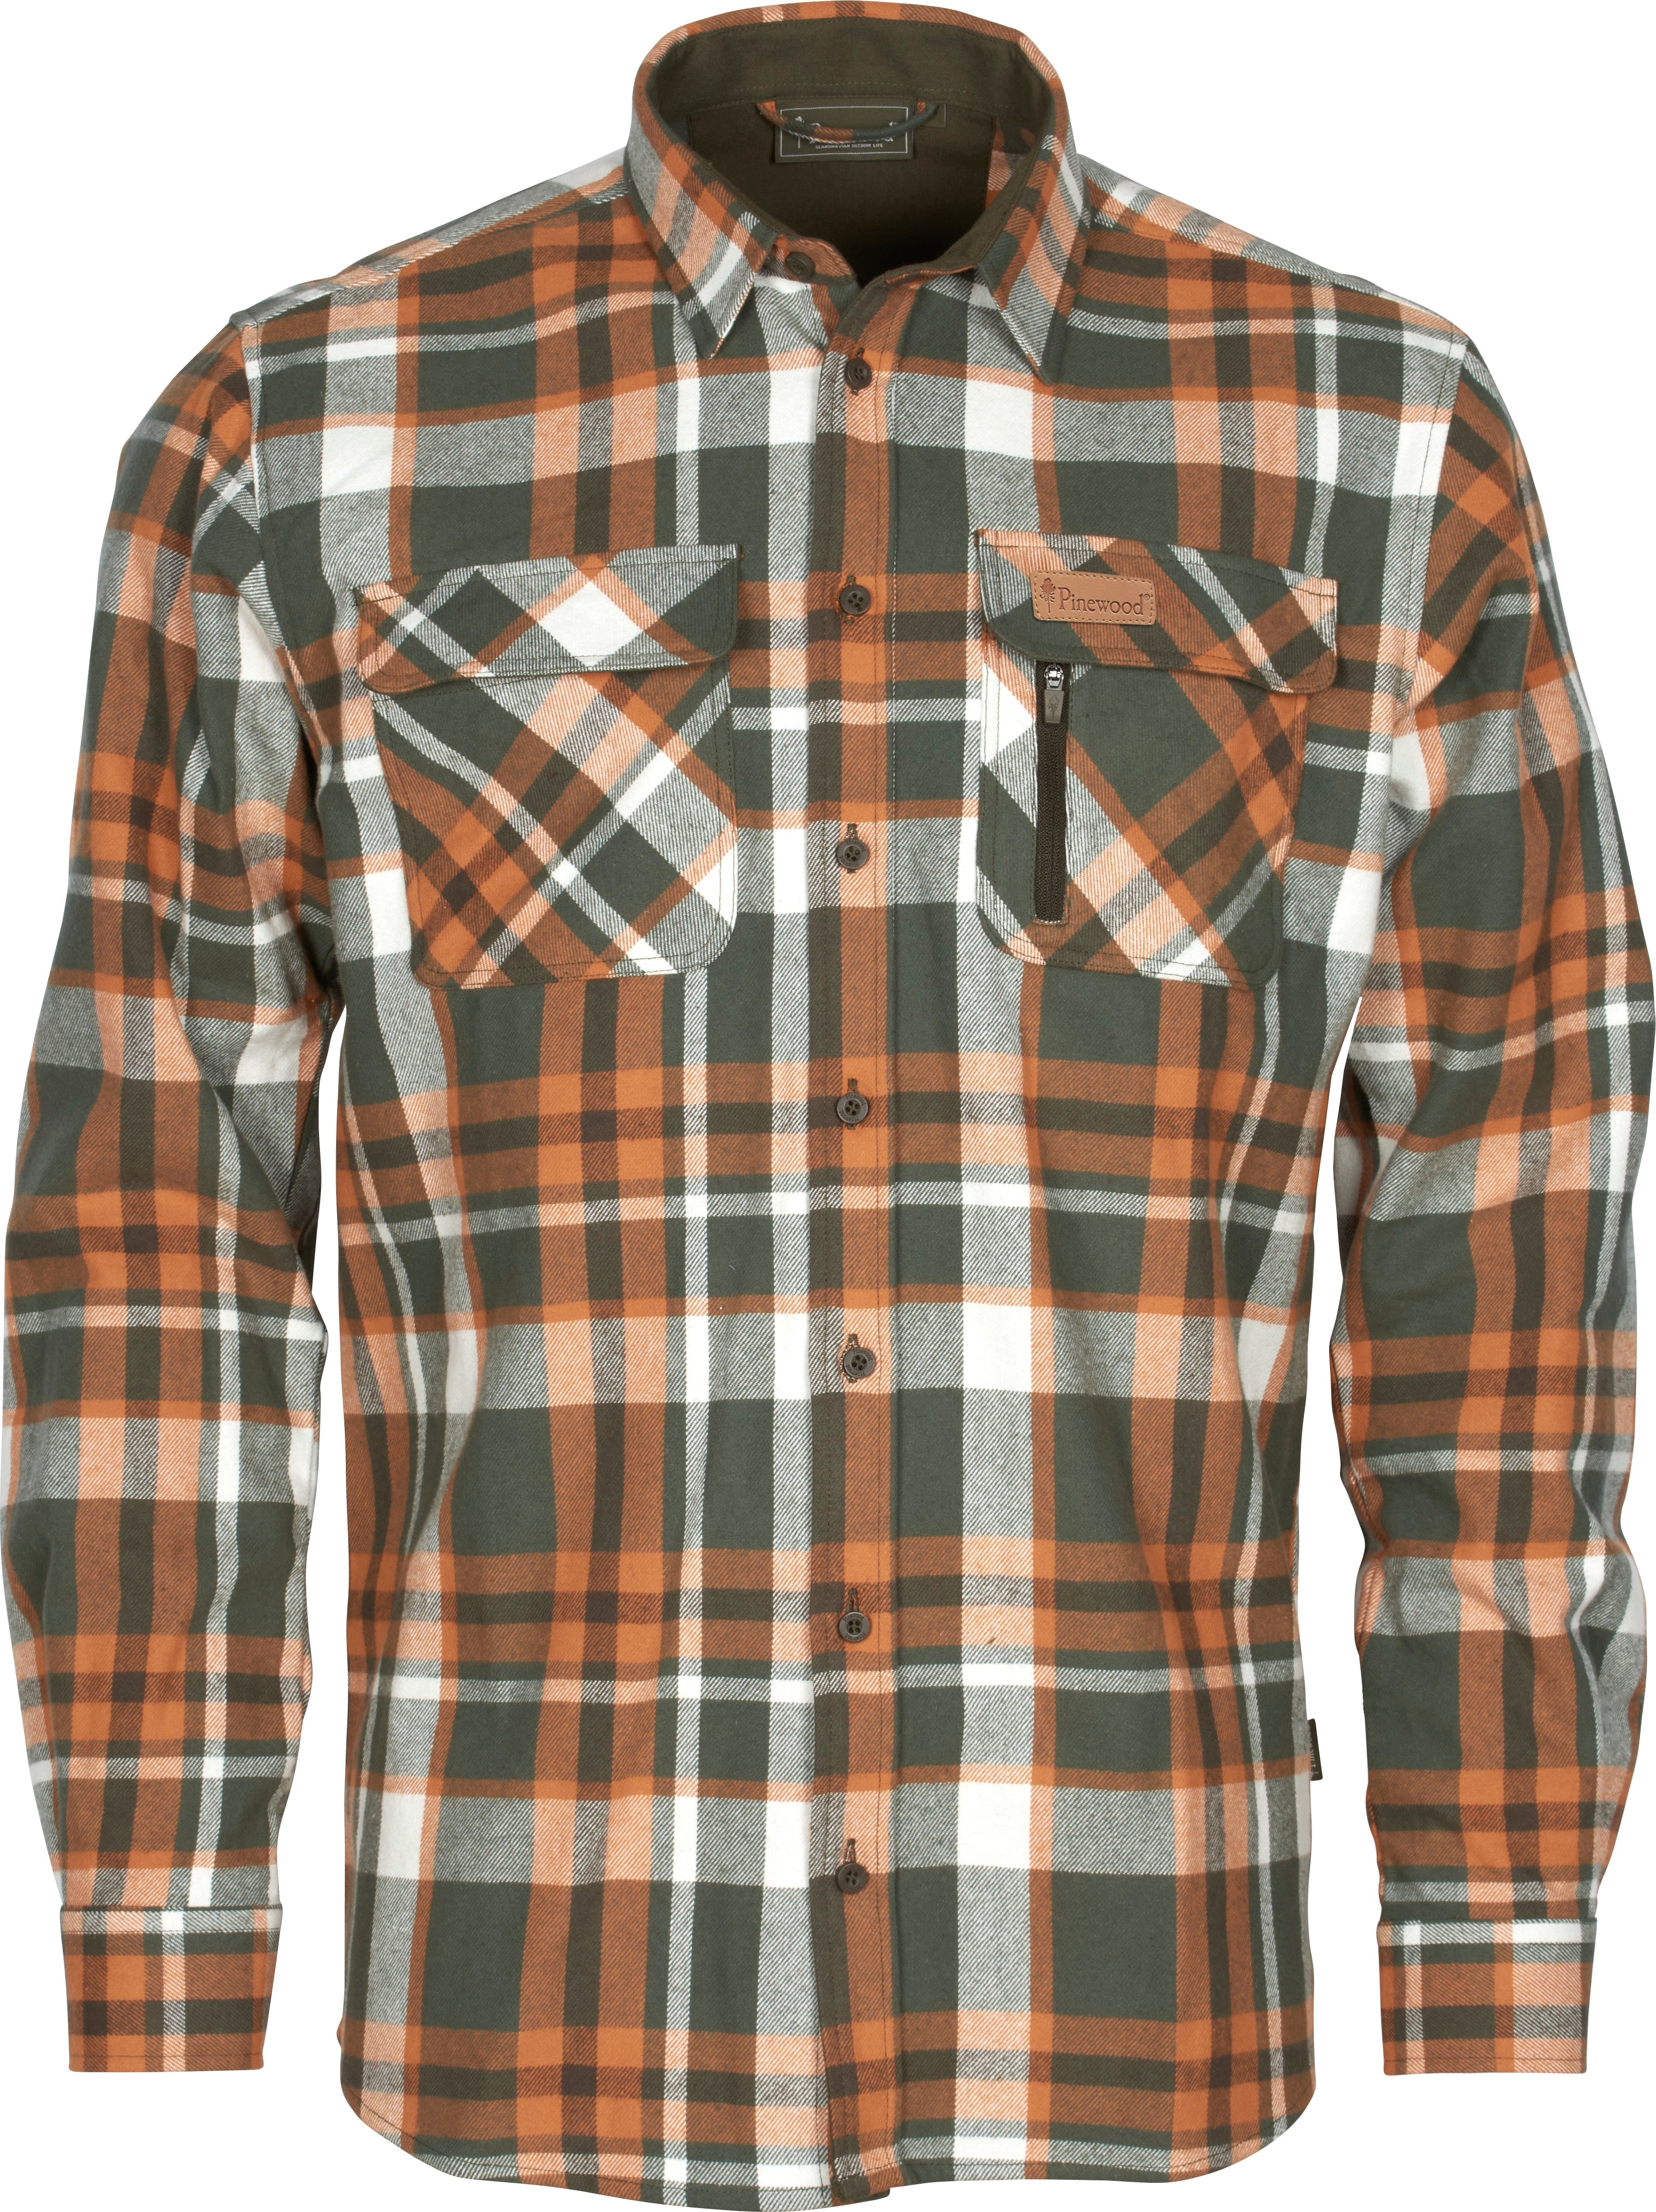 Men’s Lappland Rough Flannel Shirt Green/Orange